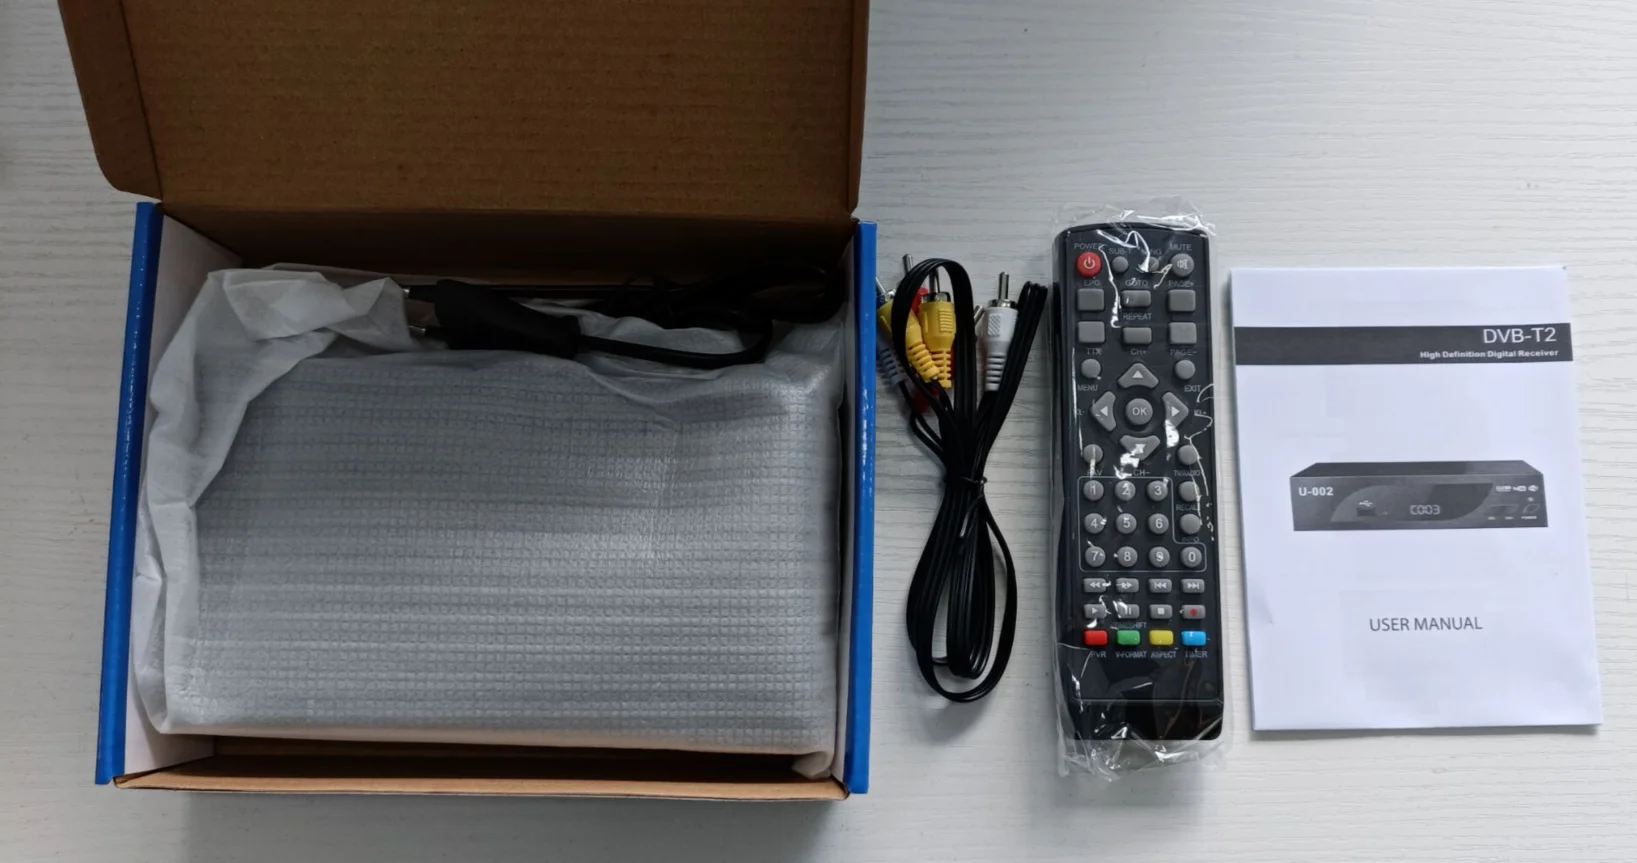 Hotselling DVB-T2 Tdt Digital TV Decodificador Set Top Box for